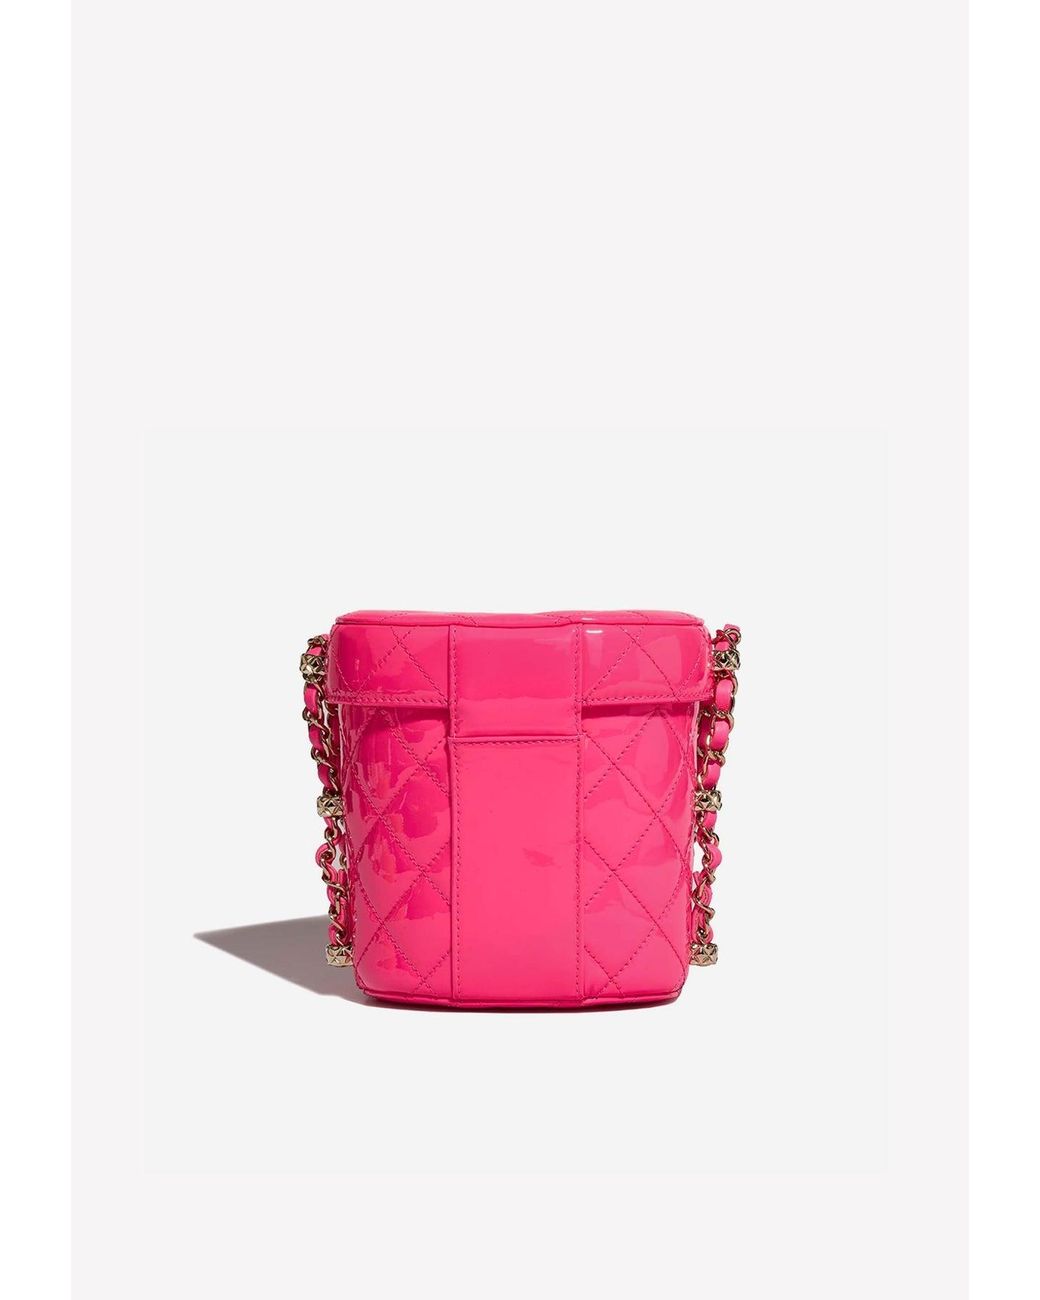 New 23C Runway CHANEL HOT Barbie Pink Patent Mini Vanity Crush Ball Handbag  24c